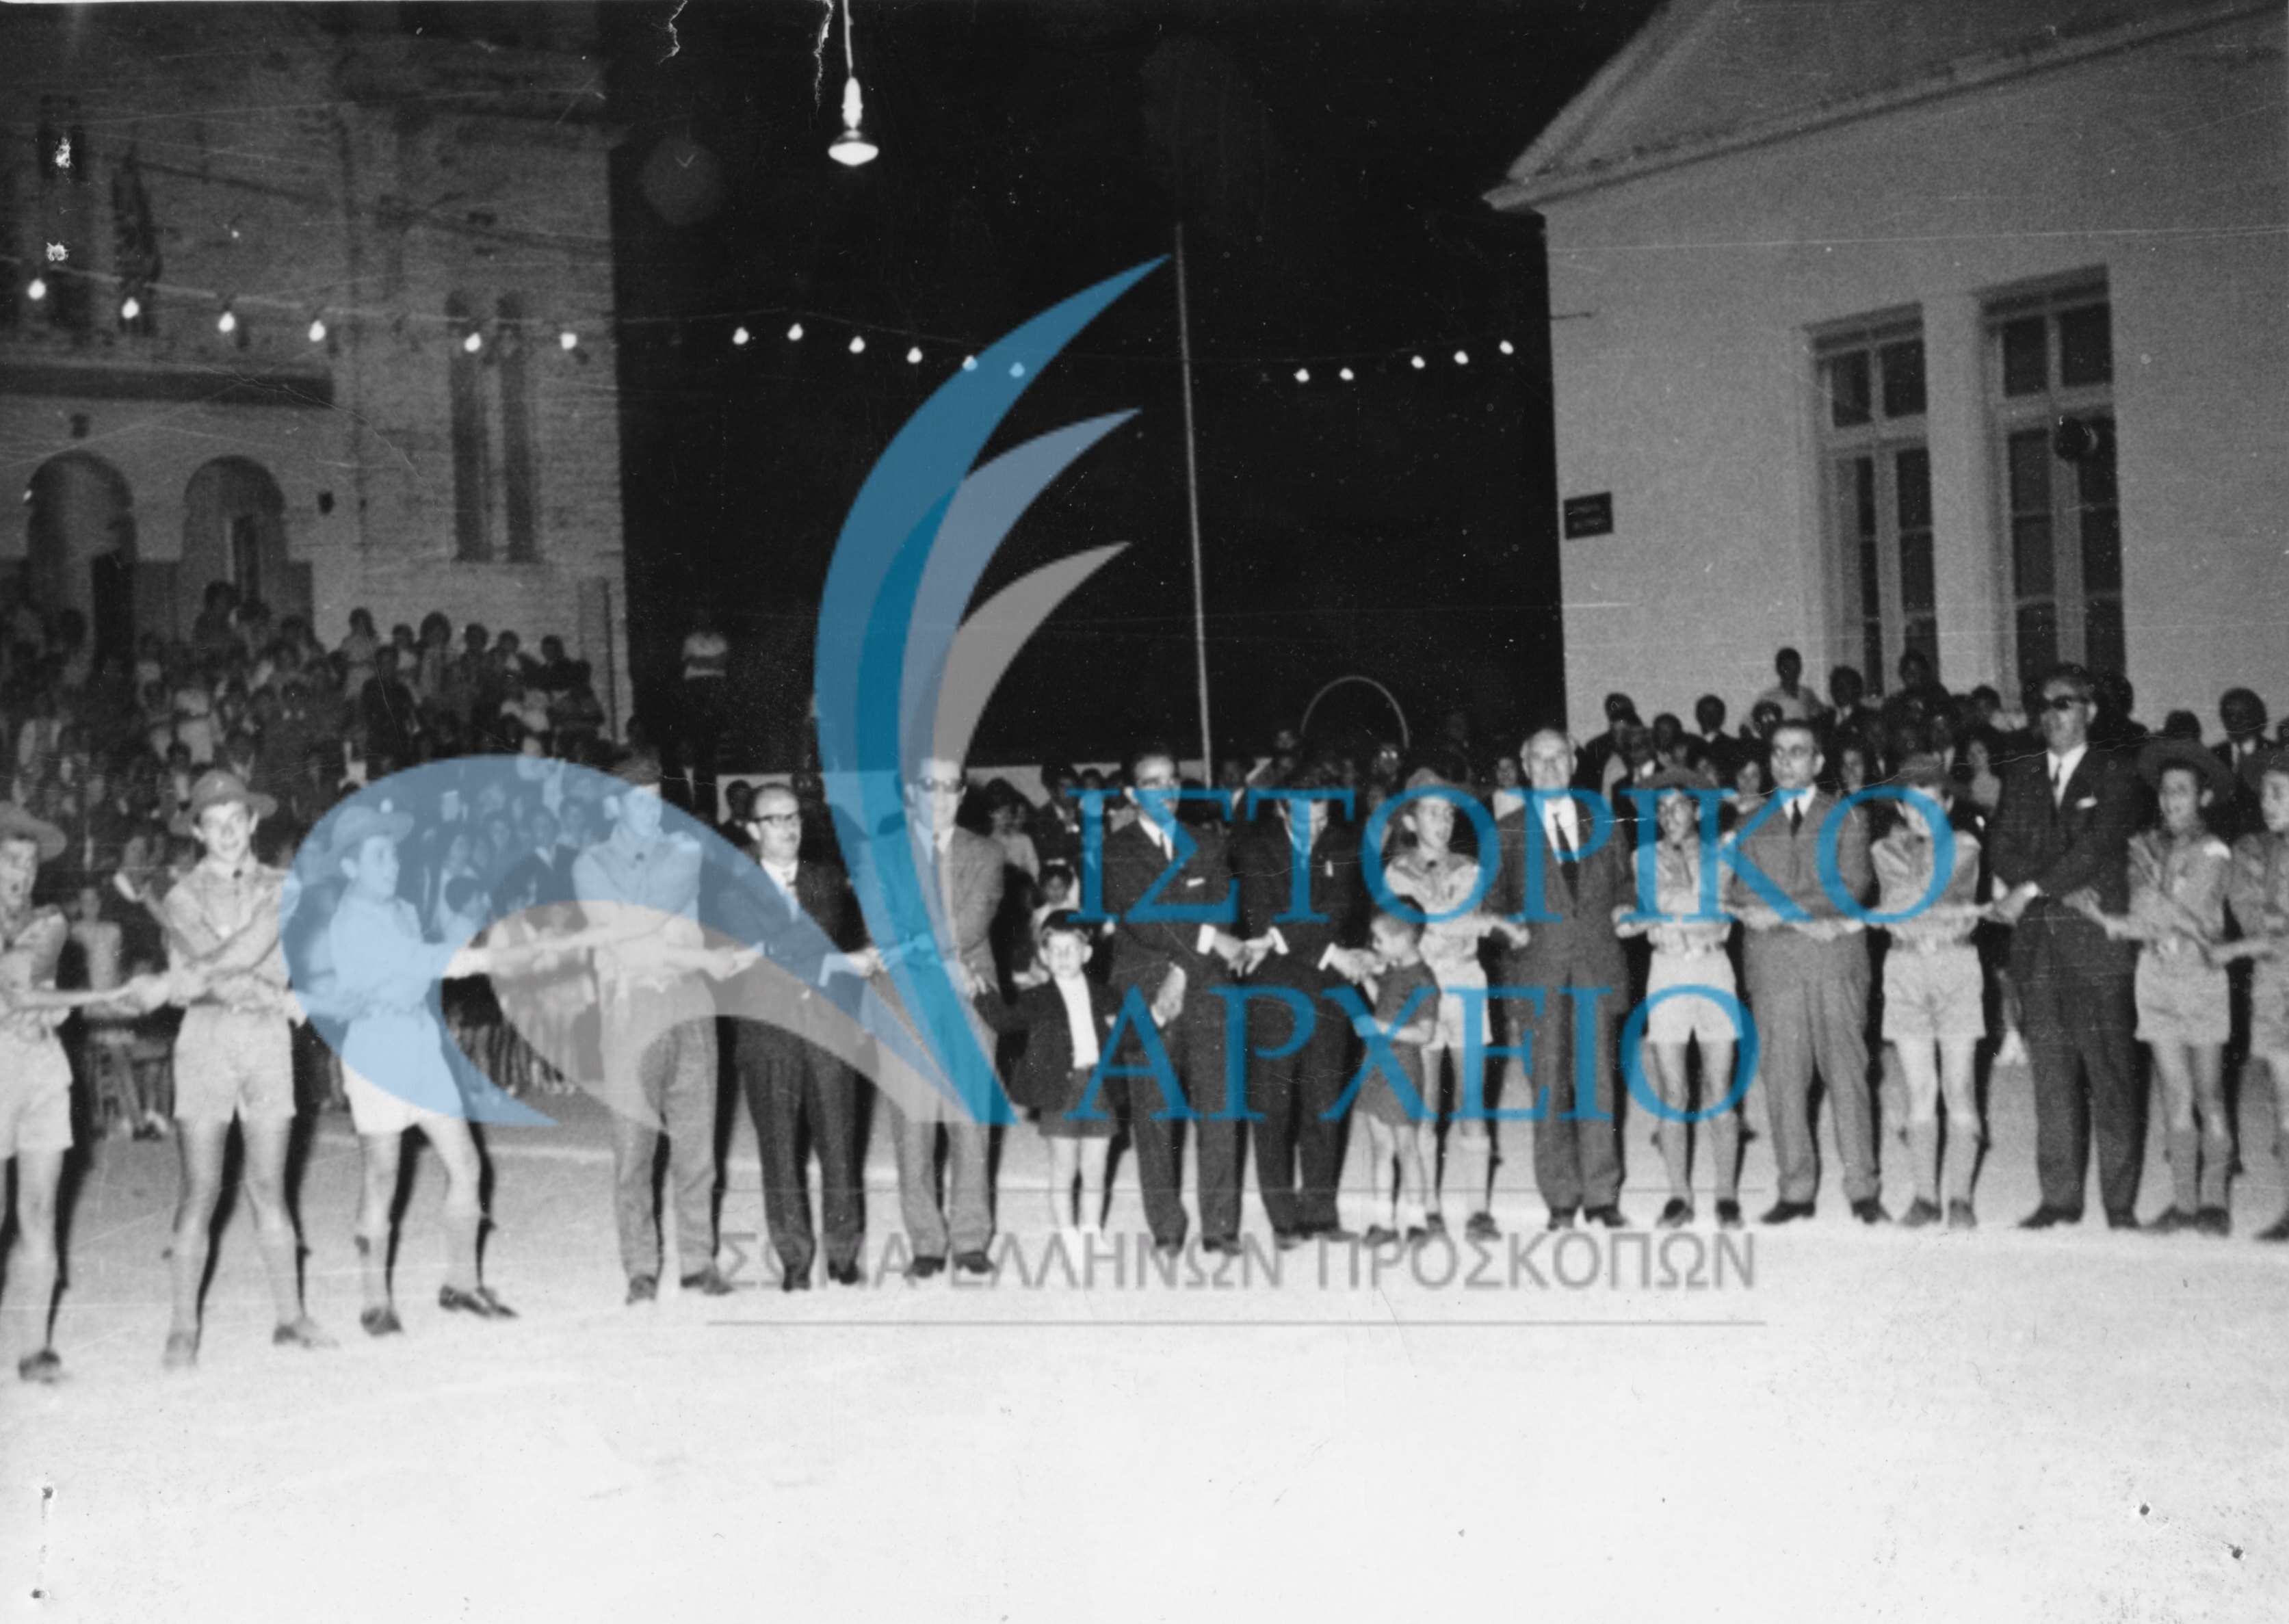 Μετά την υπόσχεση νέων λυκοπούλων του 9ου Συστήματος Αγρινίου οι παρευρισκόμενοι στο τραγούδι του αποχωρισμού στην πλατεία Αγίου Κωνσταντίνου Αγρινίου το 1971. Διακρίνονται ο Νομάρχης Ι. Καλογεράτος, ο Πρόεδρος Κοινότητας Αγ. Κωνσταντίνου, οι εκπαιδευτικοί Κωστόπουλος, Ζωγόπουλος, ο ΑΣ Α. Μαστοράκης και ο ΤΕ Αγρινίου Σπ. Ζόλδερ.